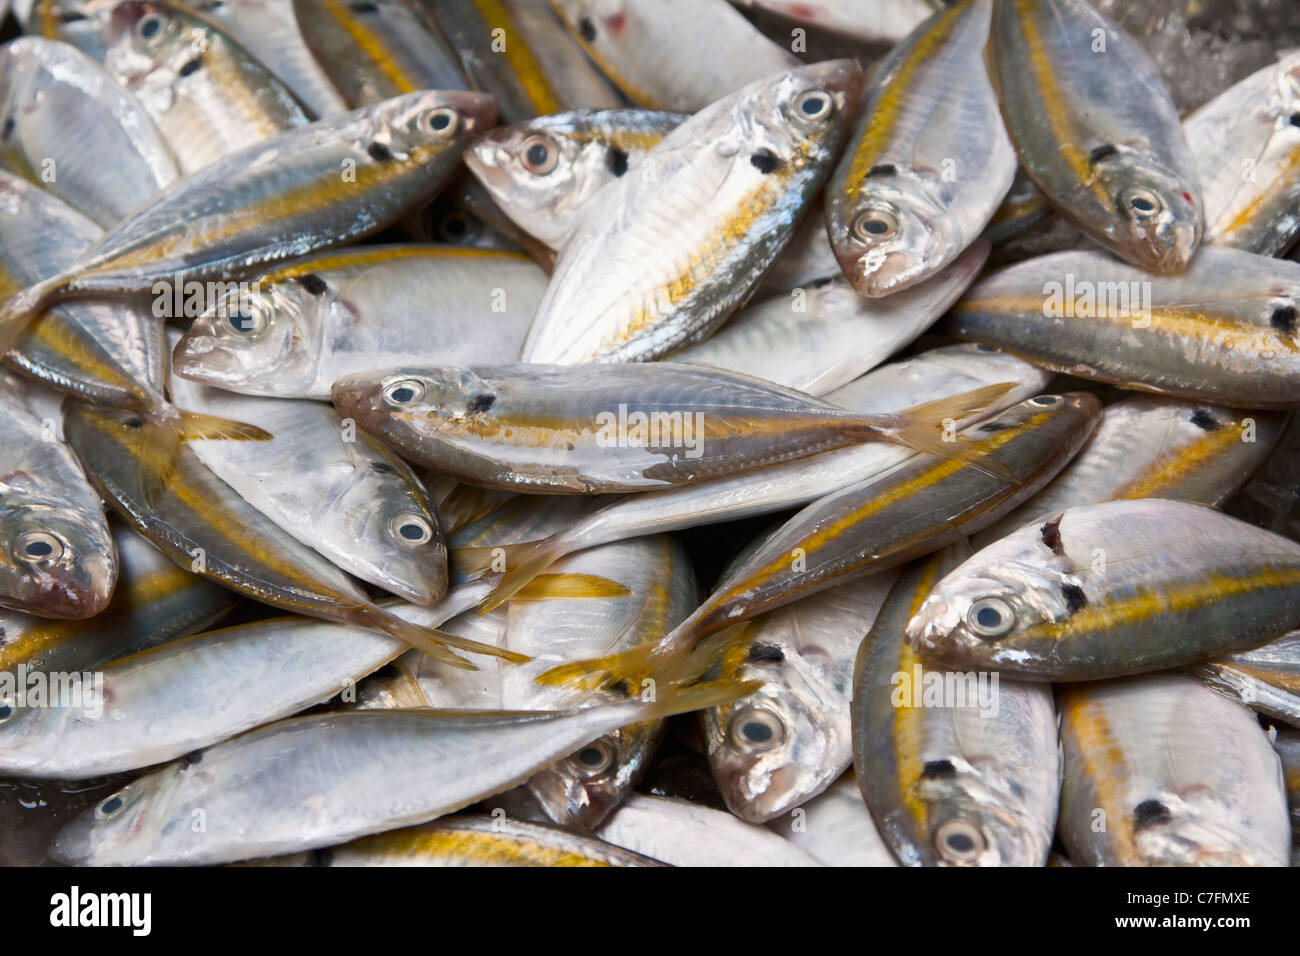 L'affichage des prises quotidiennes de wladin rayé jaune à un marché aux poissons, la Thaïlande Banque D'Images